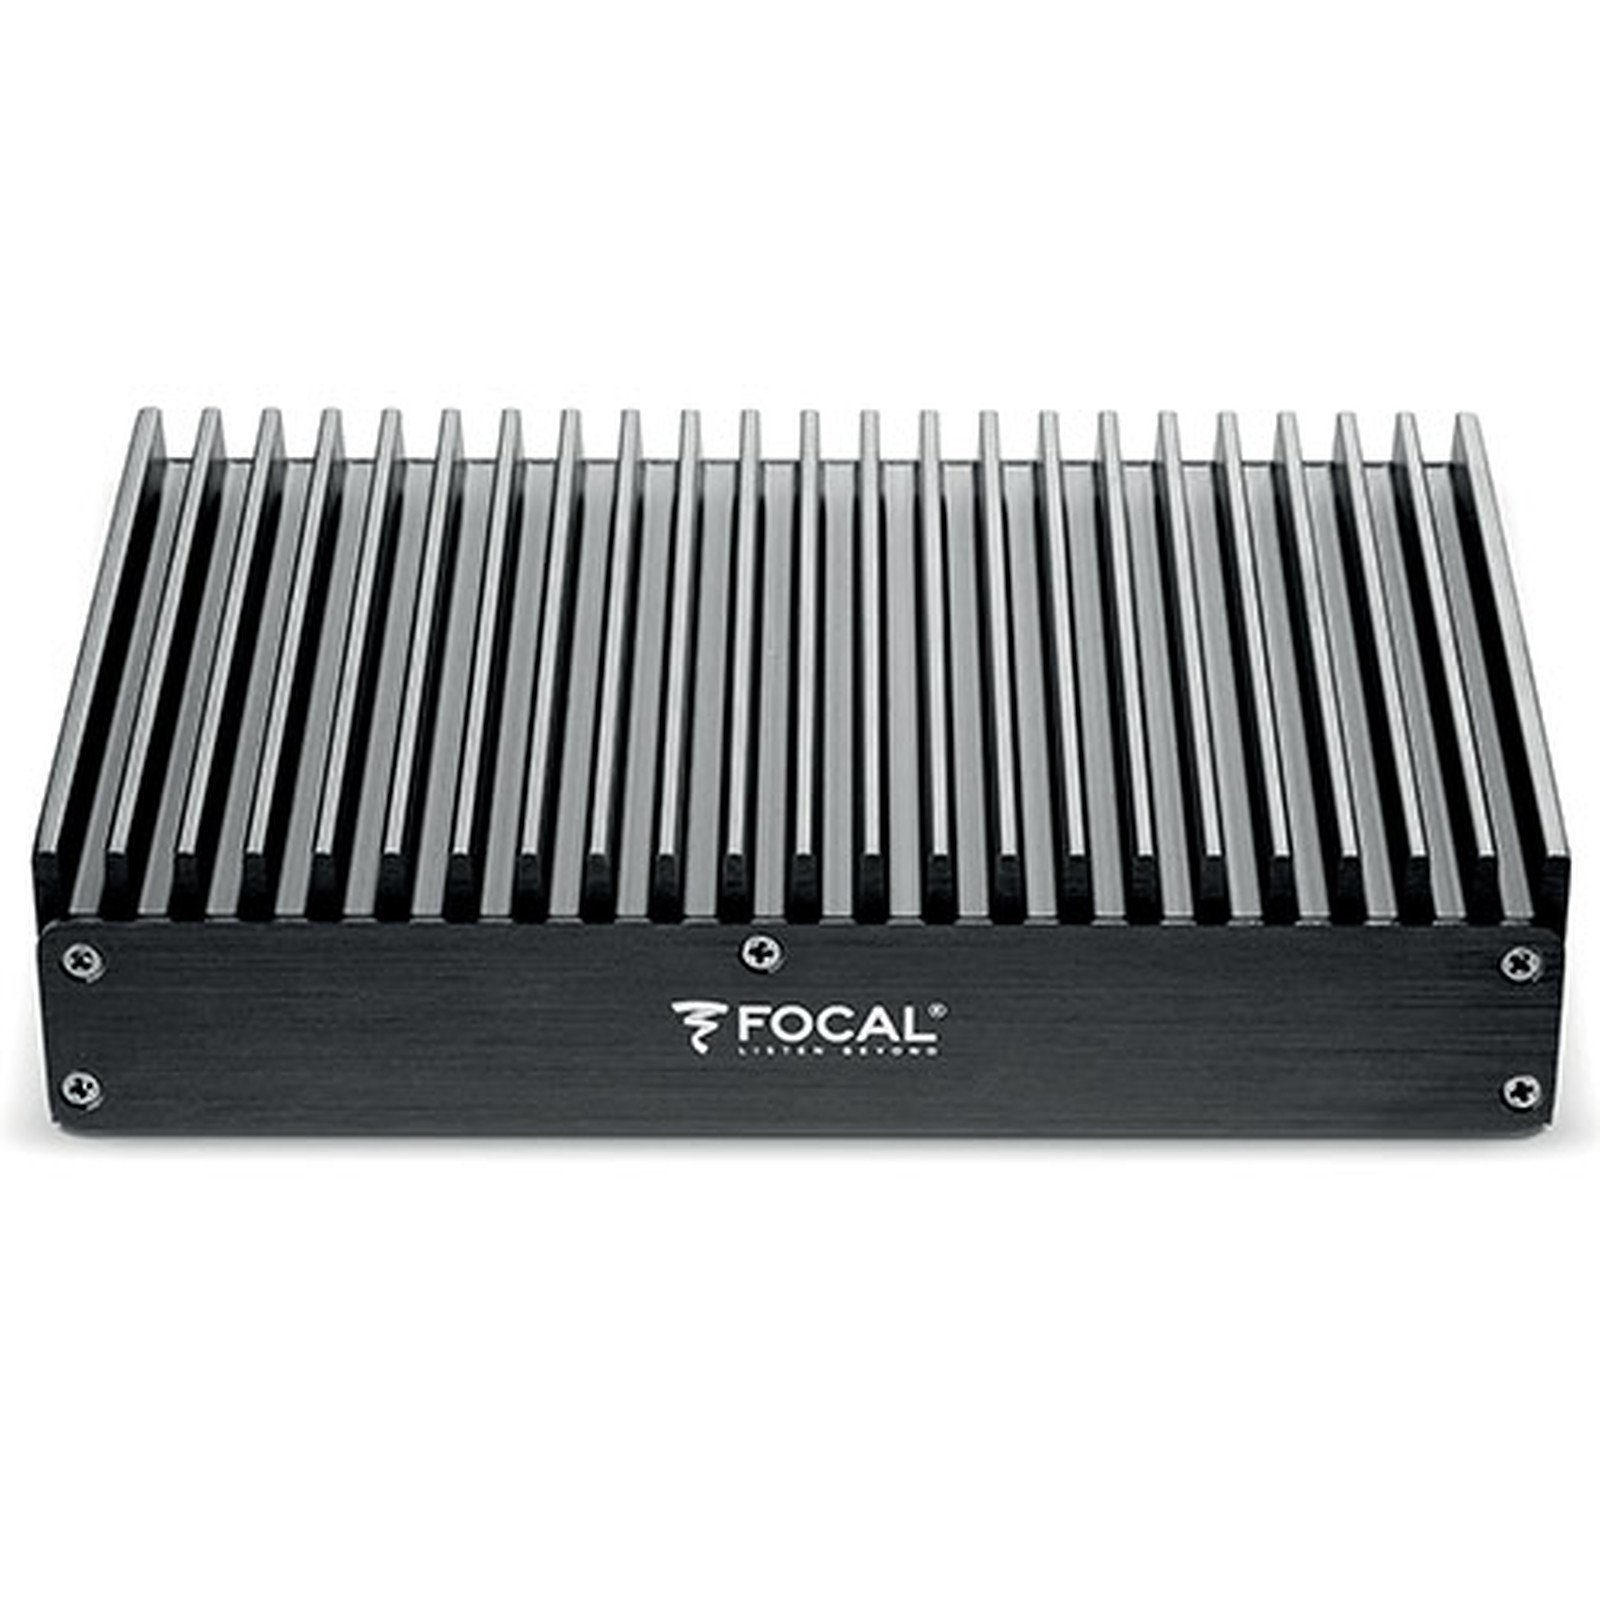 FOCAL FIT 9.660 9-Kanal Endstufe / Verstärker mit DSP Verstärker (Anzahl Kanäle: 9-Kanal)